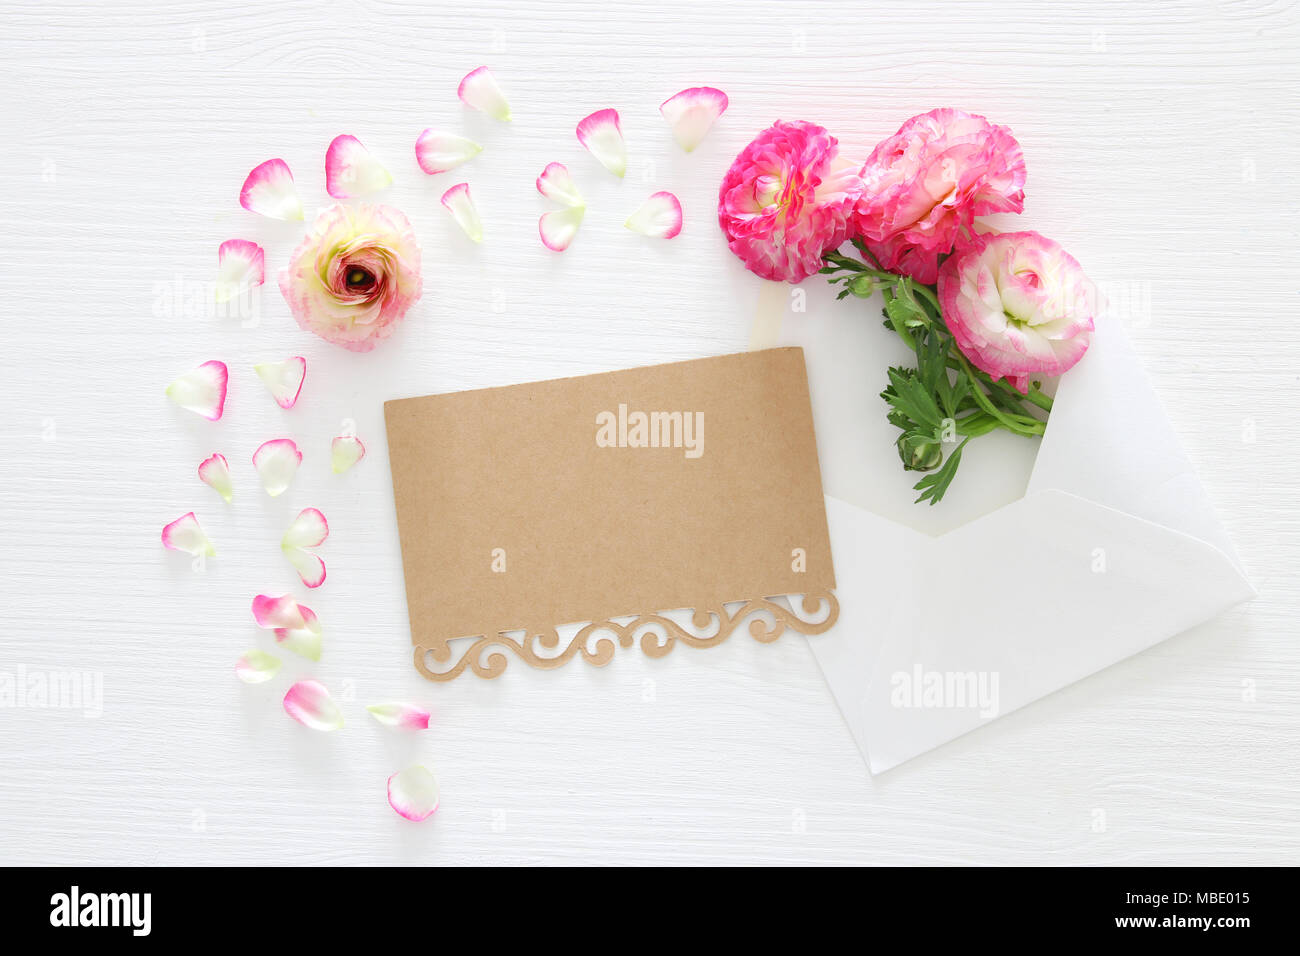 Image de l'enveloppe avec de belles fleurs rose pastel délicates sur fond de bois blanc arrangement. Mise à plat, vue du dessus Banque D'Images